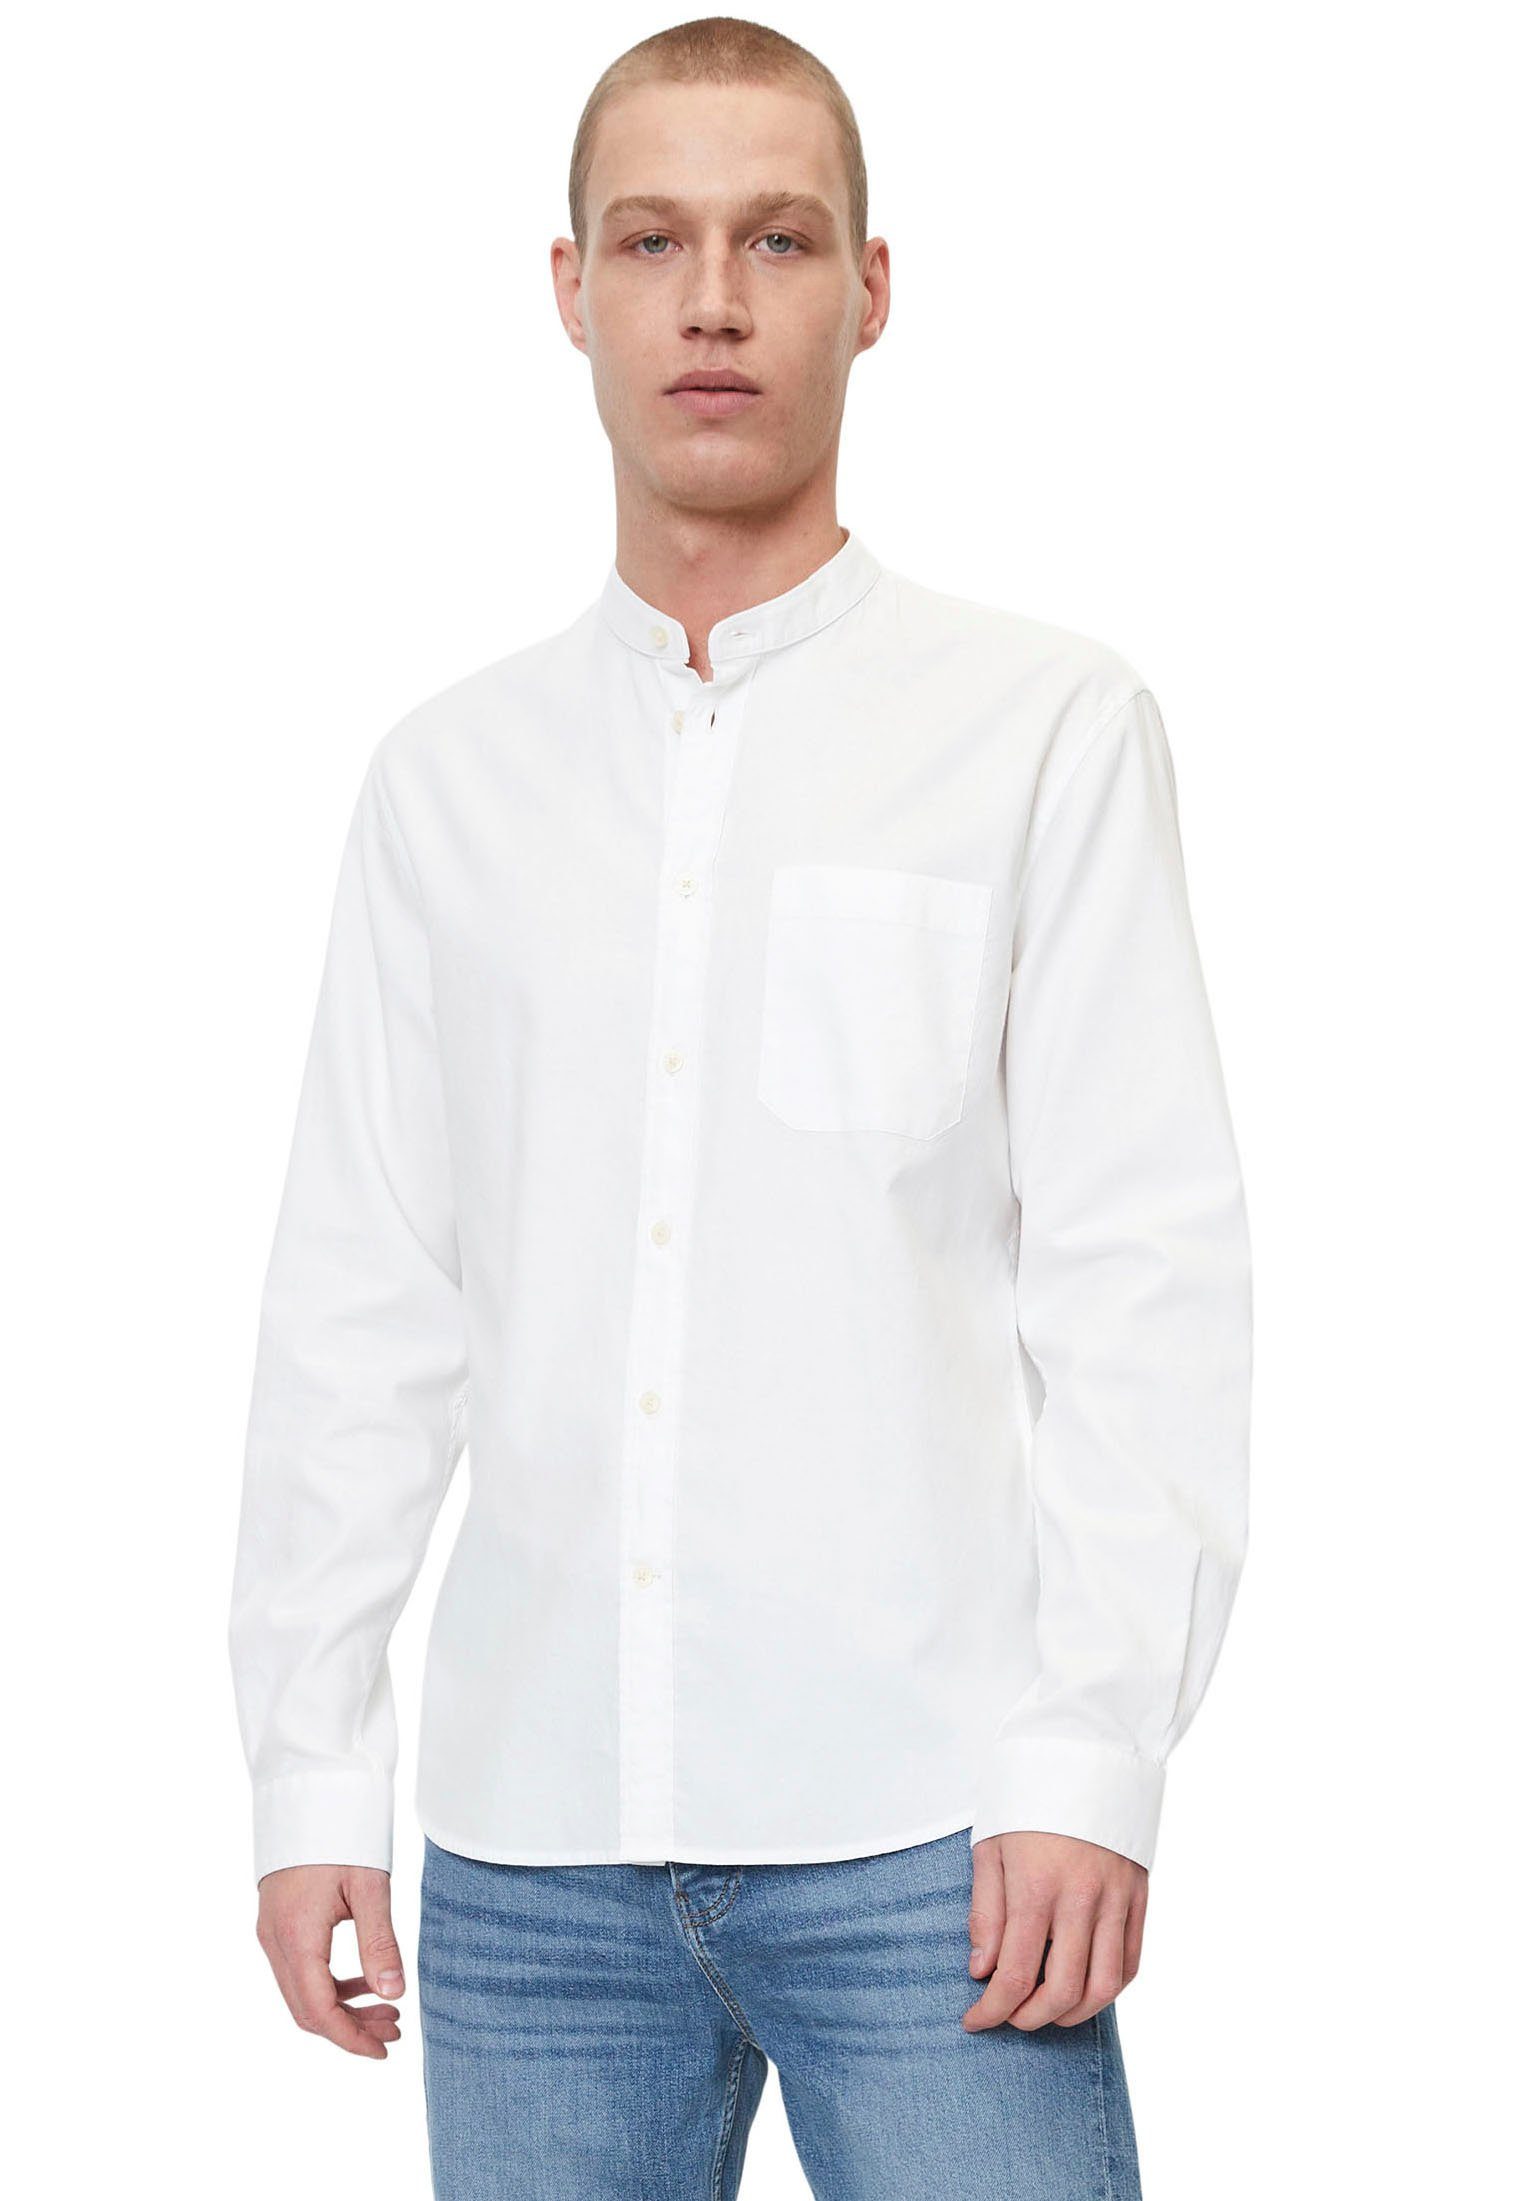 Marc O'Polo DENIM Langarmhemd mit Stehkragen wollweiß | Hemden